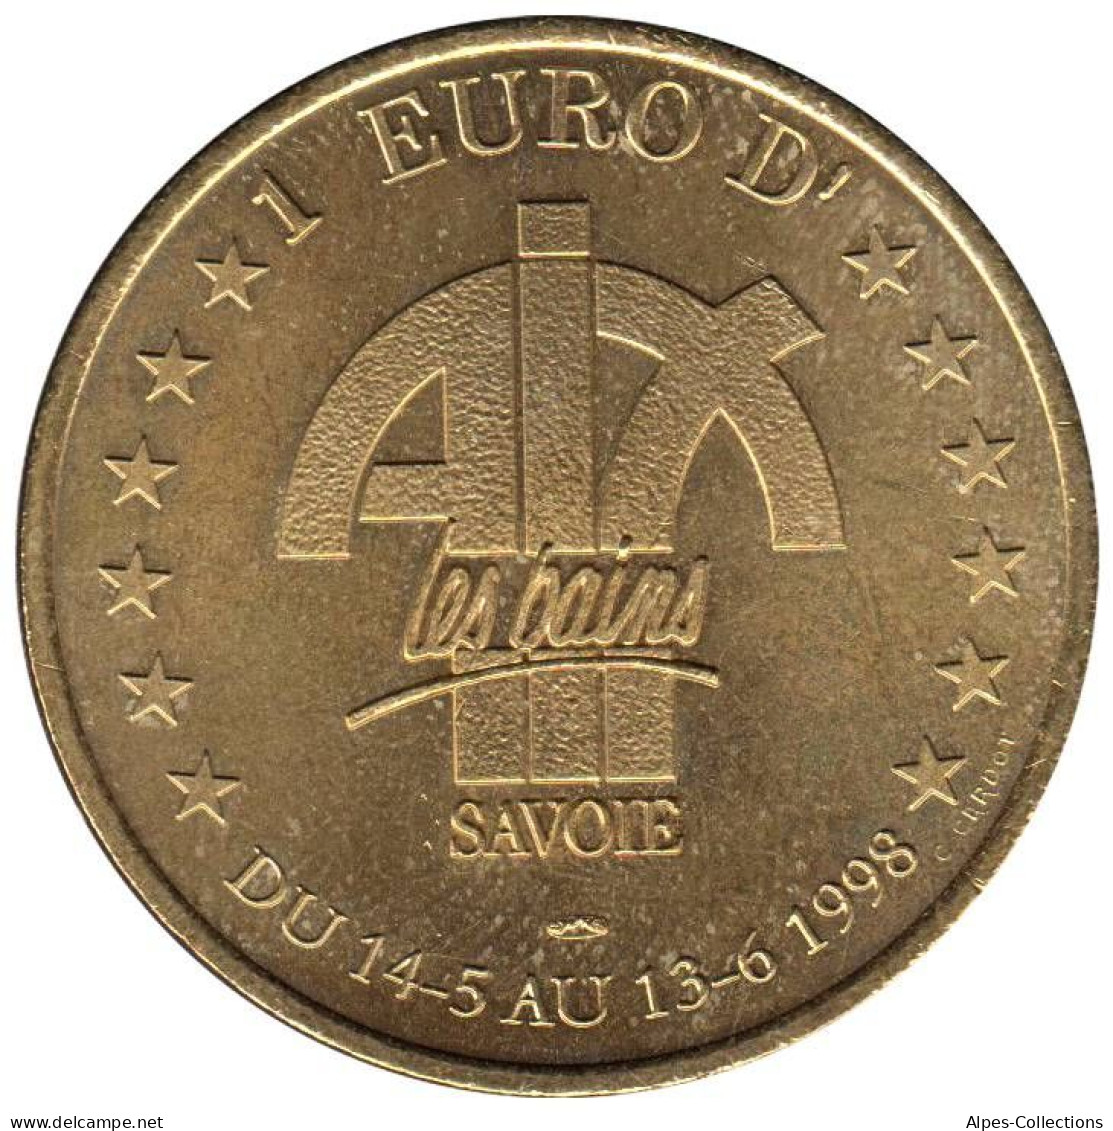 AIX LES BAINS - EU0010.2 - 1 EURO DES VILLES - Réf: T418 - 1998 - Euros De Las Ciudades